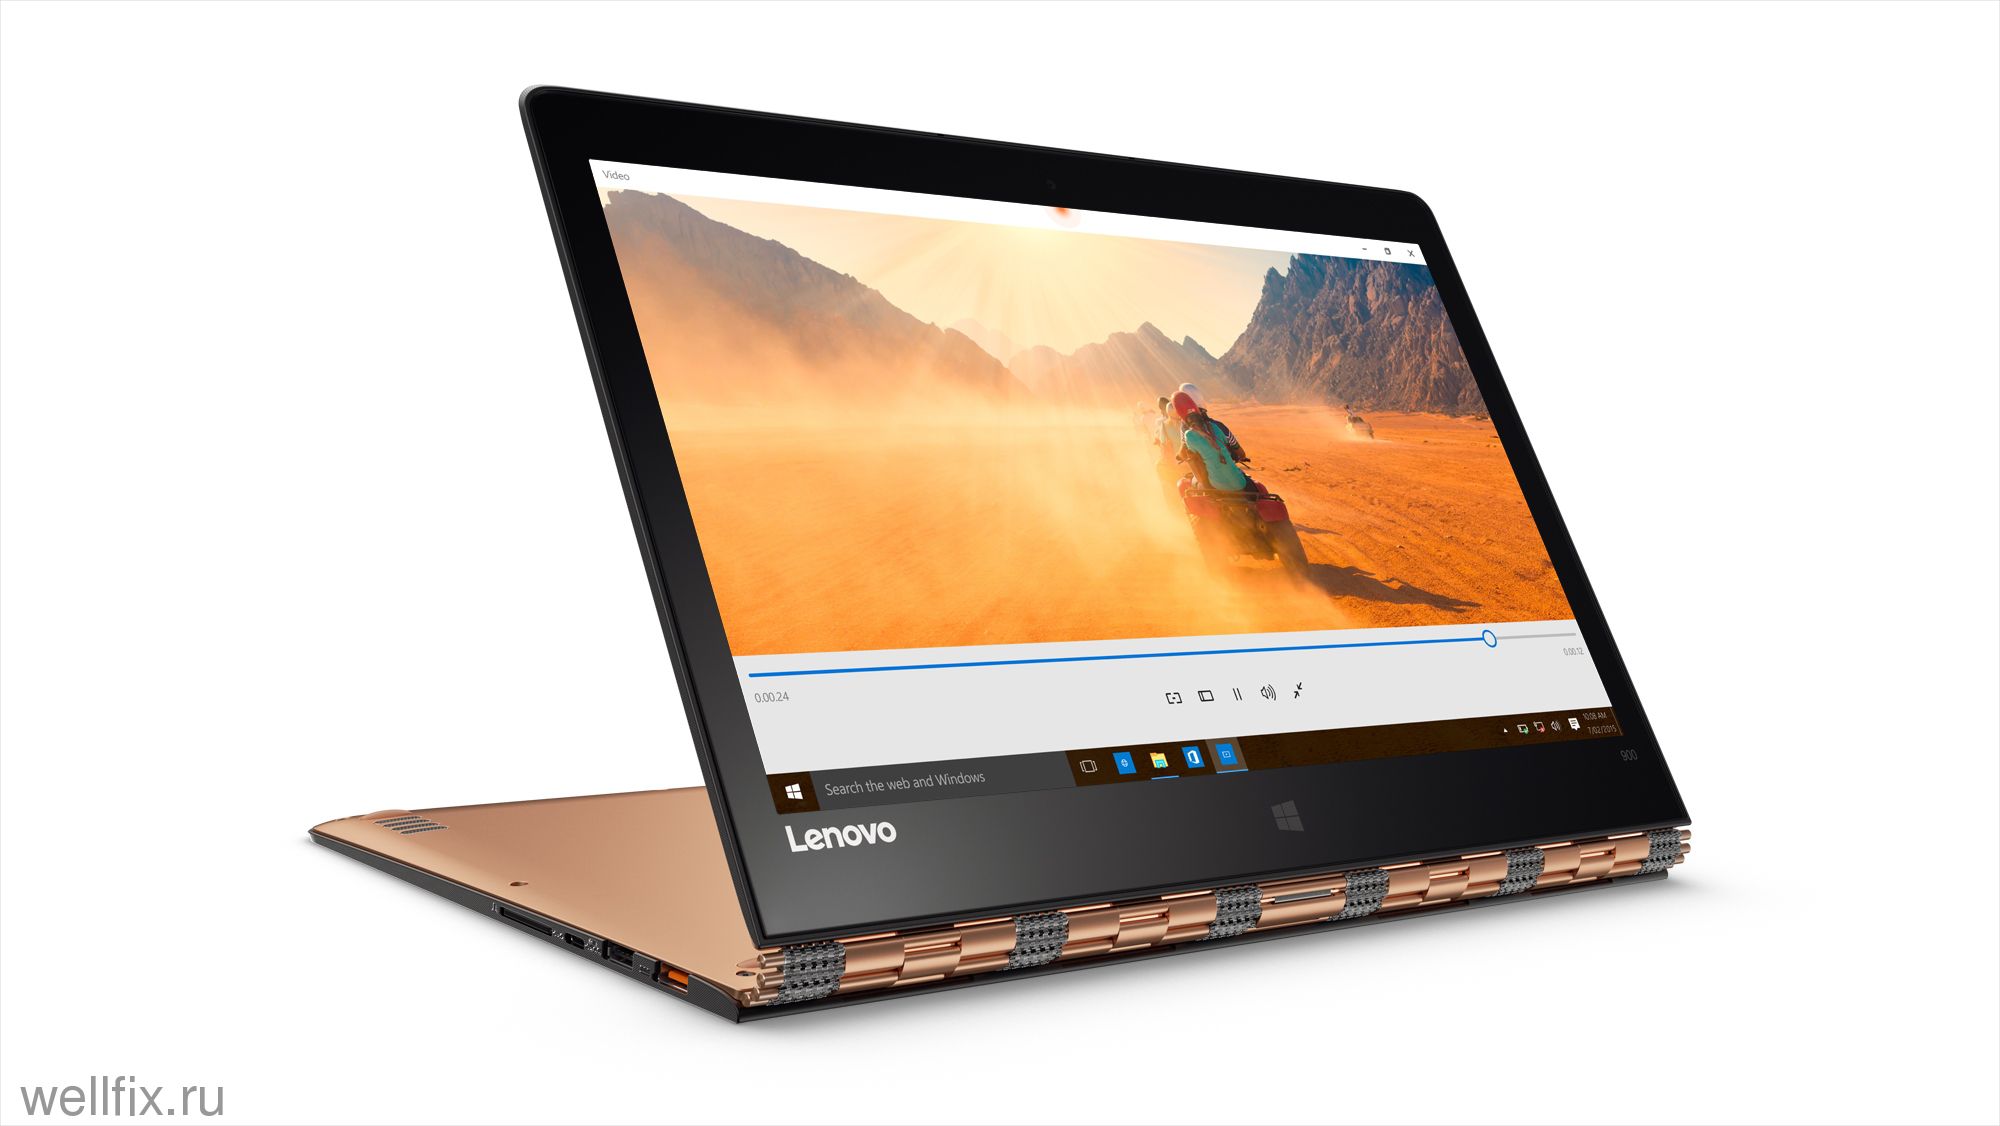 Видео о новом Lenovo